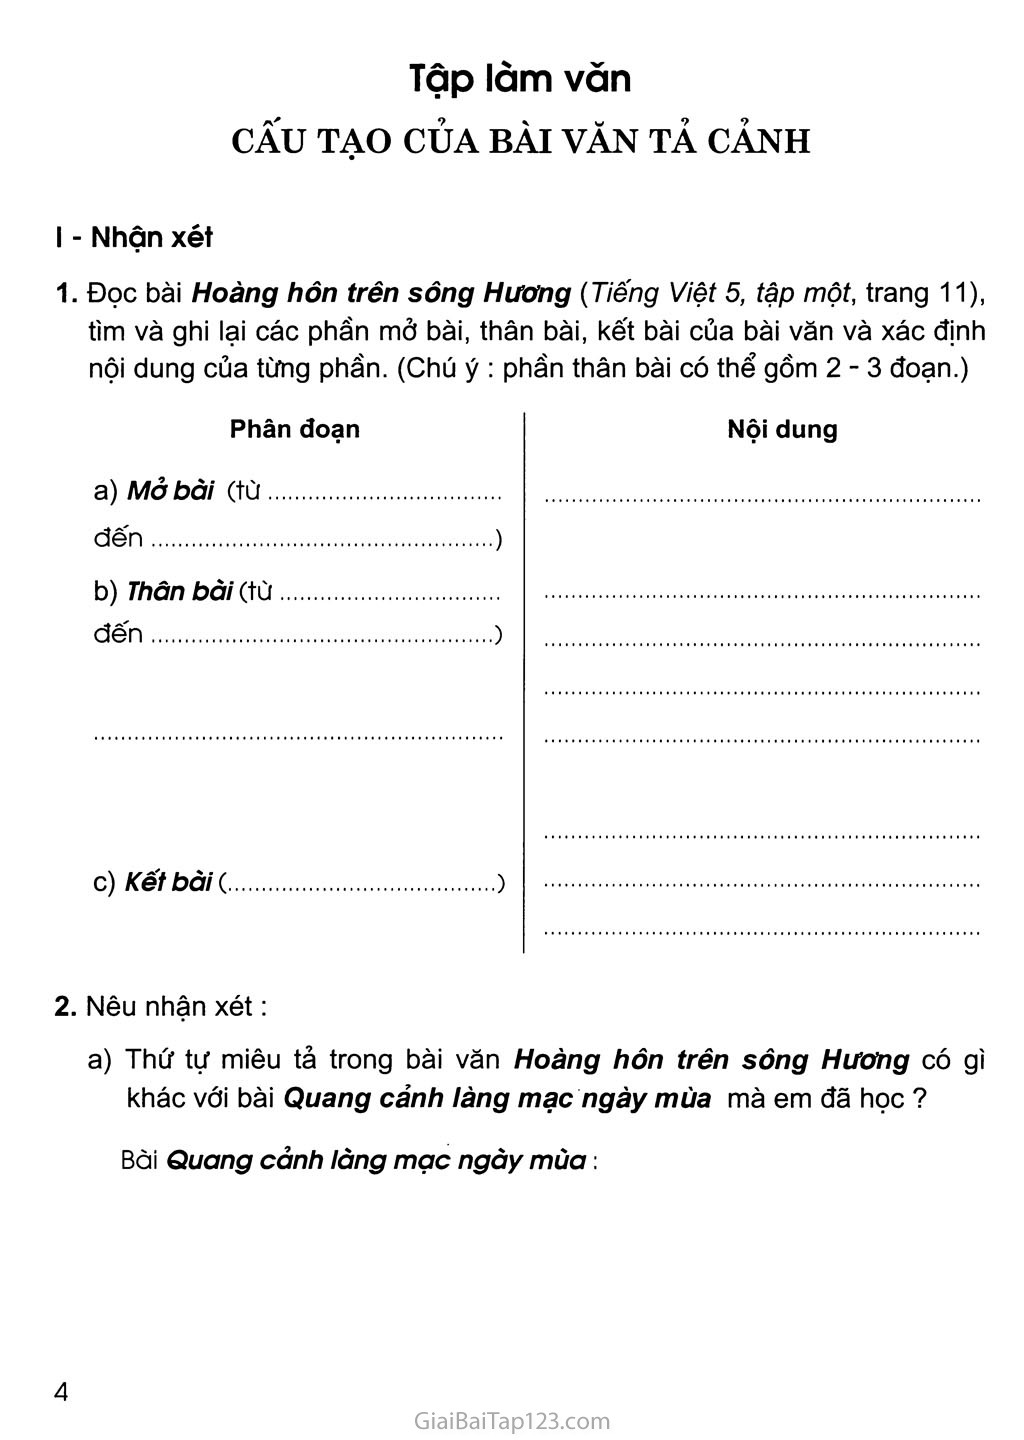 SGK Vở bài tập Tiếng Việt 5 - tài liệu không thể thiếu trong quá trình học tập của học sinh. Với những bài tập hấp dẫn và cả những kiến thức nền tảng, SGK Vở bài tập Tiếng Việt 5 sẽ giúp các em có một hành trang vững chắc trên con đường học tập. Hãy cùng xem hình ảnh và bắt đầu hành trình khám phá kiến thức mới nhé!